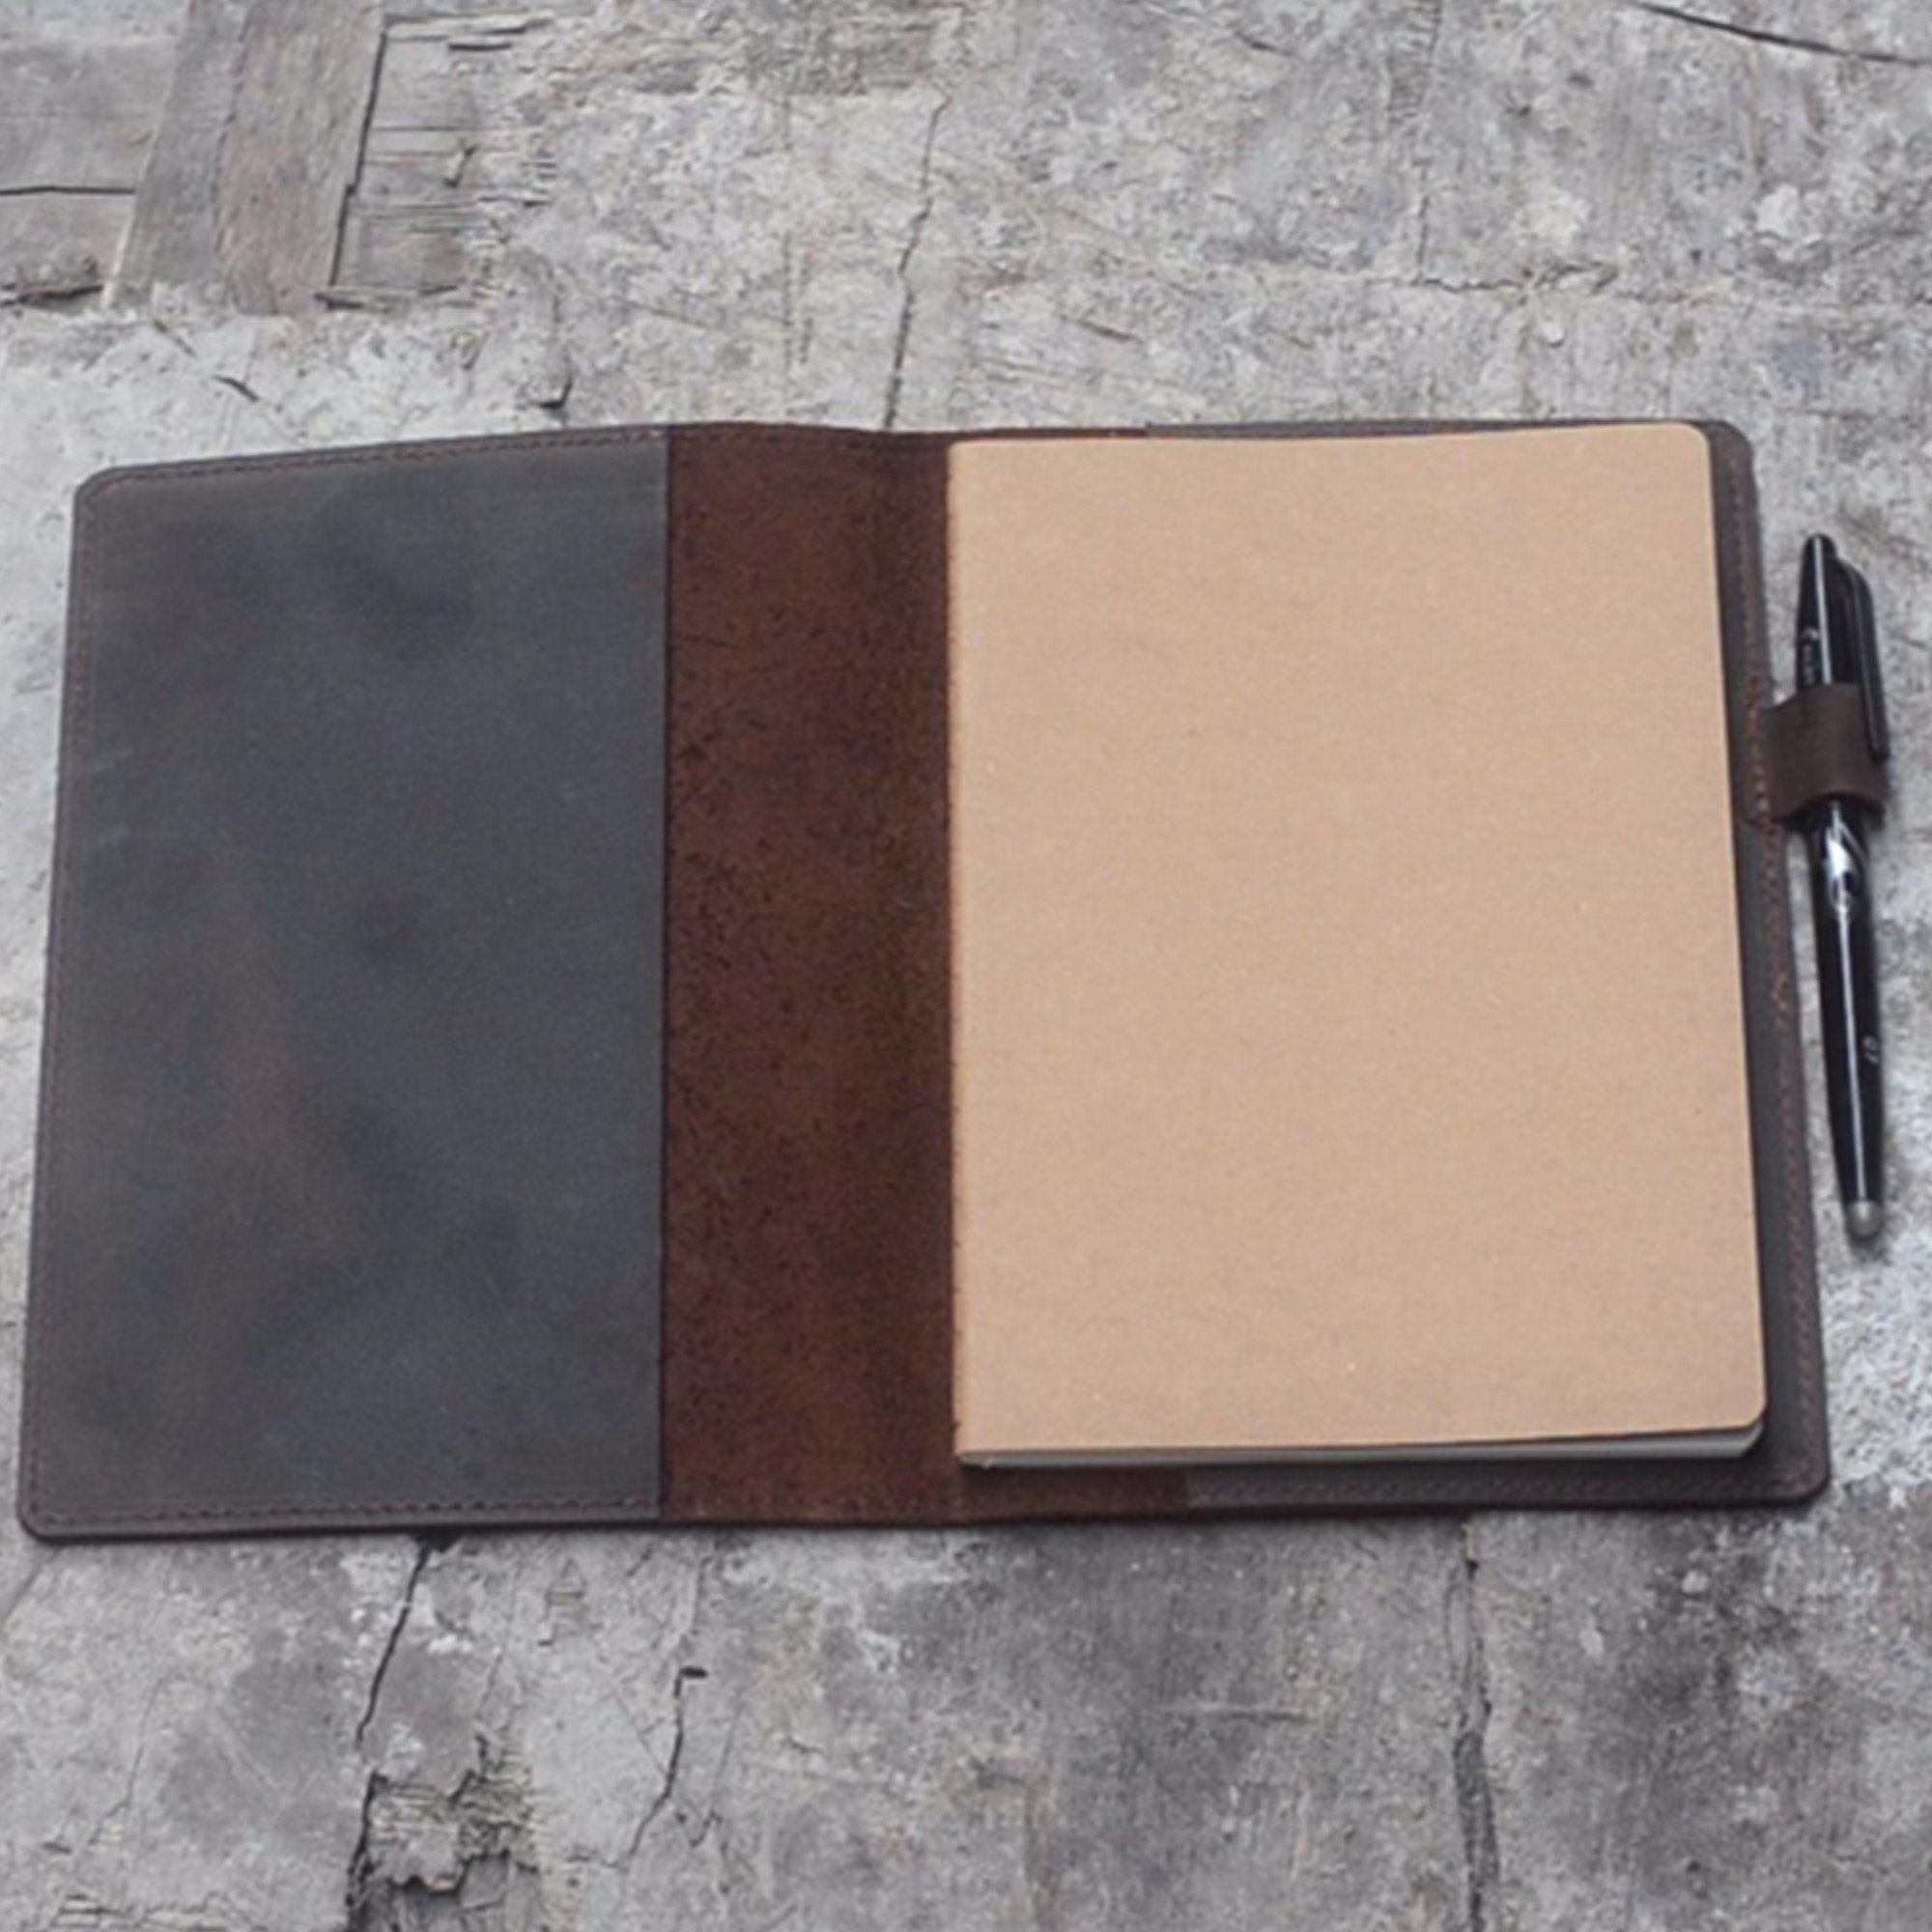 IPad Mini Leather Portfolio Case With Writing Paper Pad,ipad Leather A5  Notepad With iPad Mini Pocket,ipad Mini Zipper Sleeve Folio Cover 